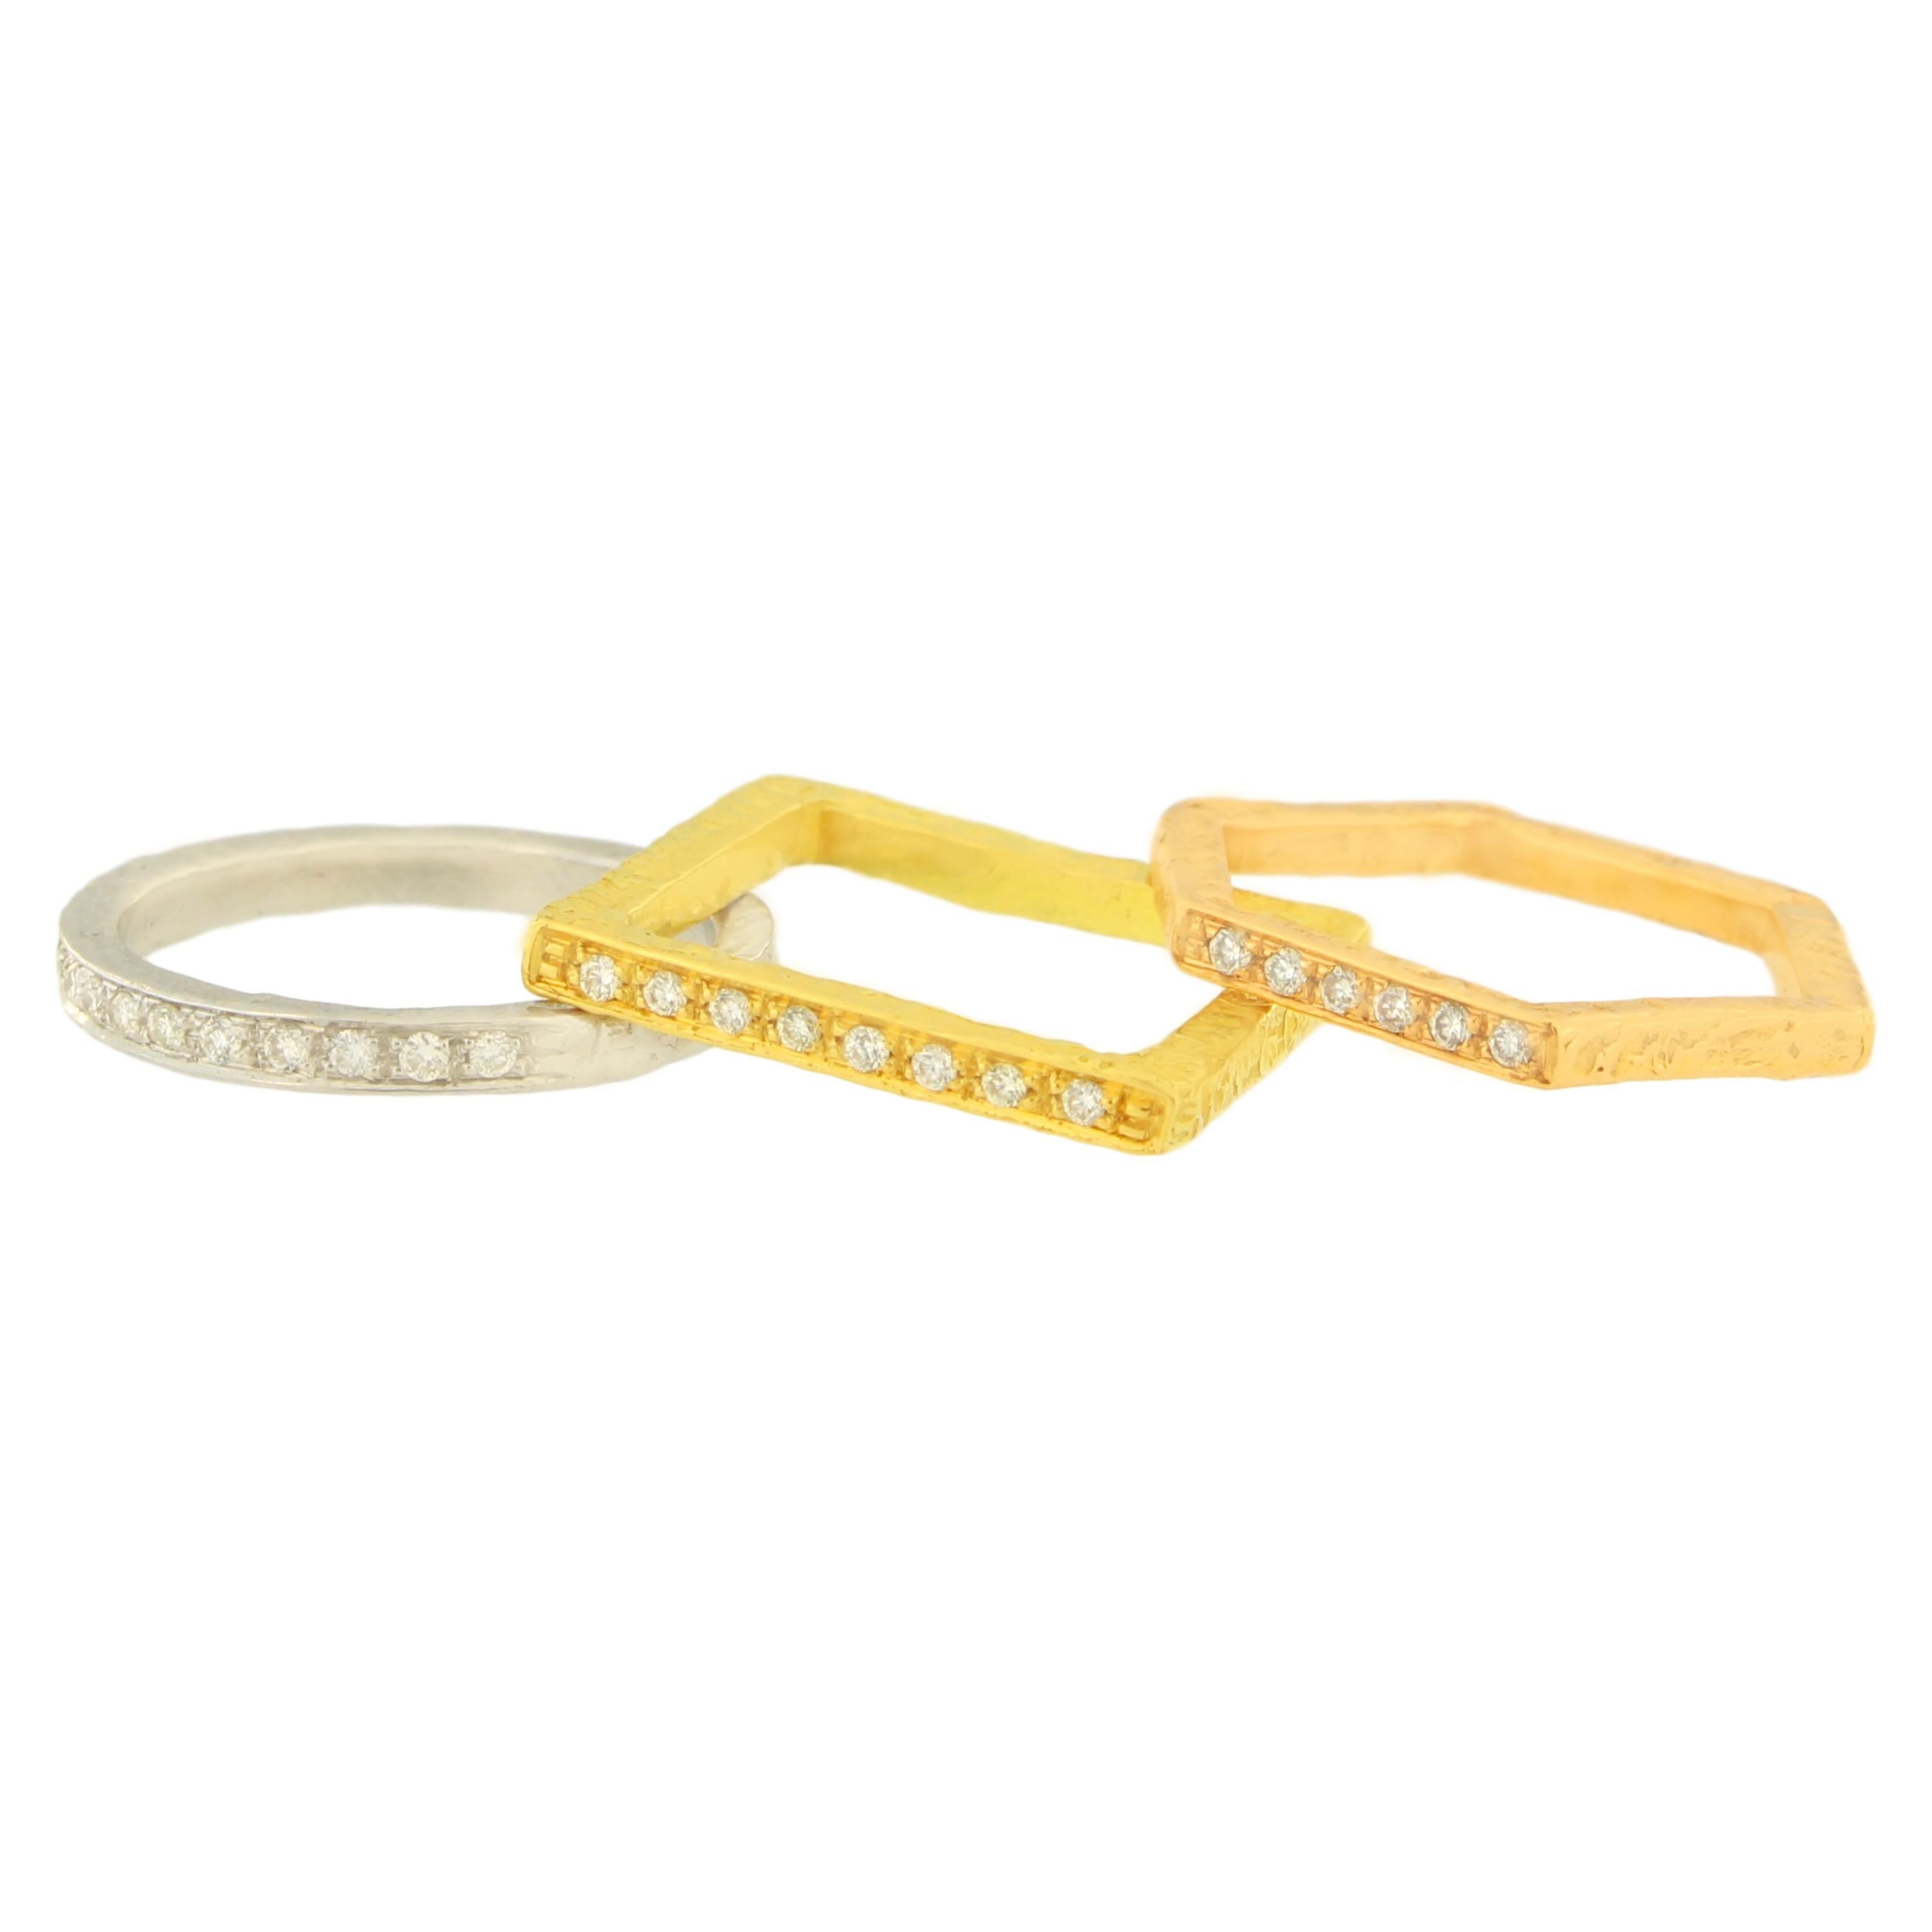 Schöner Trinity Ring aus 18 Karat satiniertem Gelb-, Weiß- und Roségold, handgefertigt im Wachsausschmelzverfahren.

Der Wachsausschmelzguss, eine der ältesten Techniken zur Herstellung von Schmuck, bildet die Grundlage für die Schmuckproduktion von